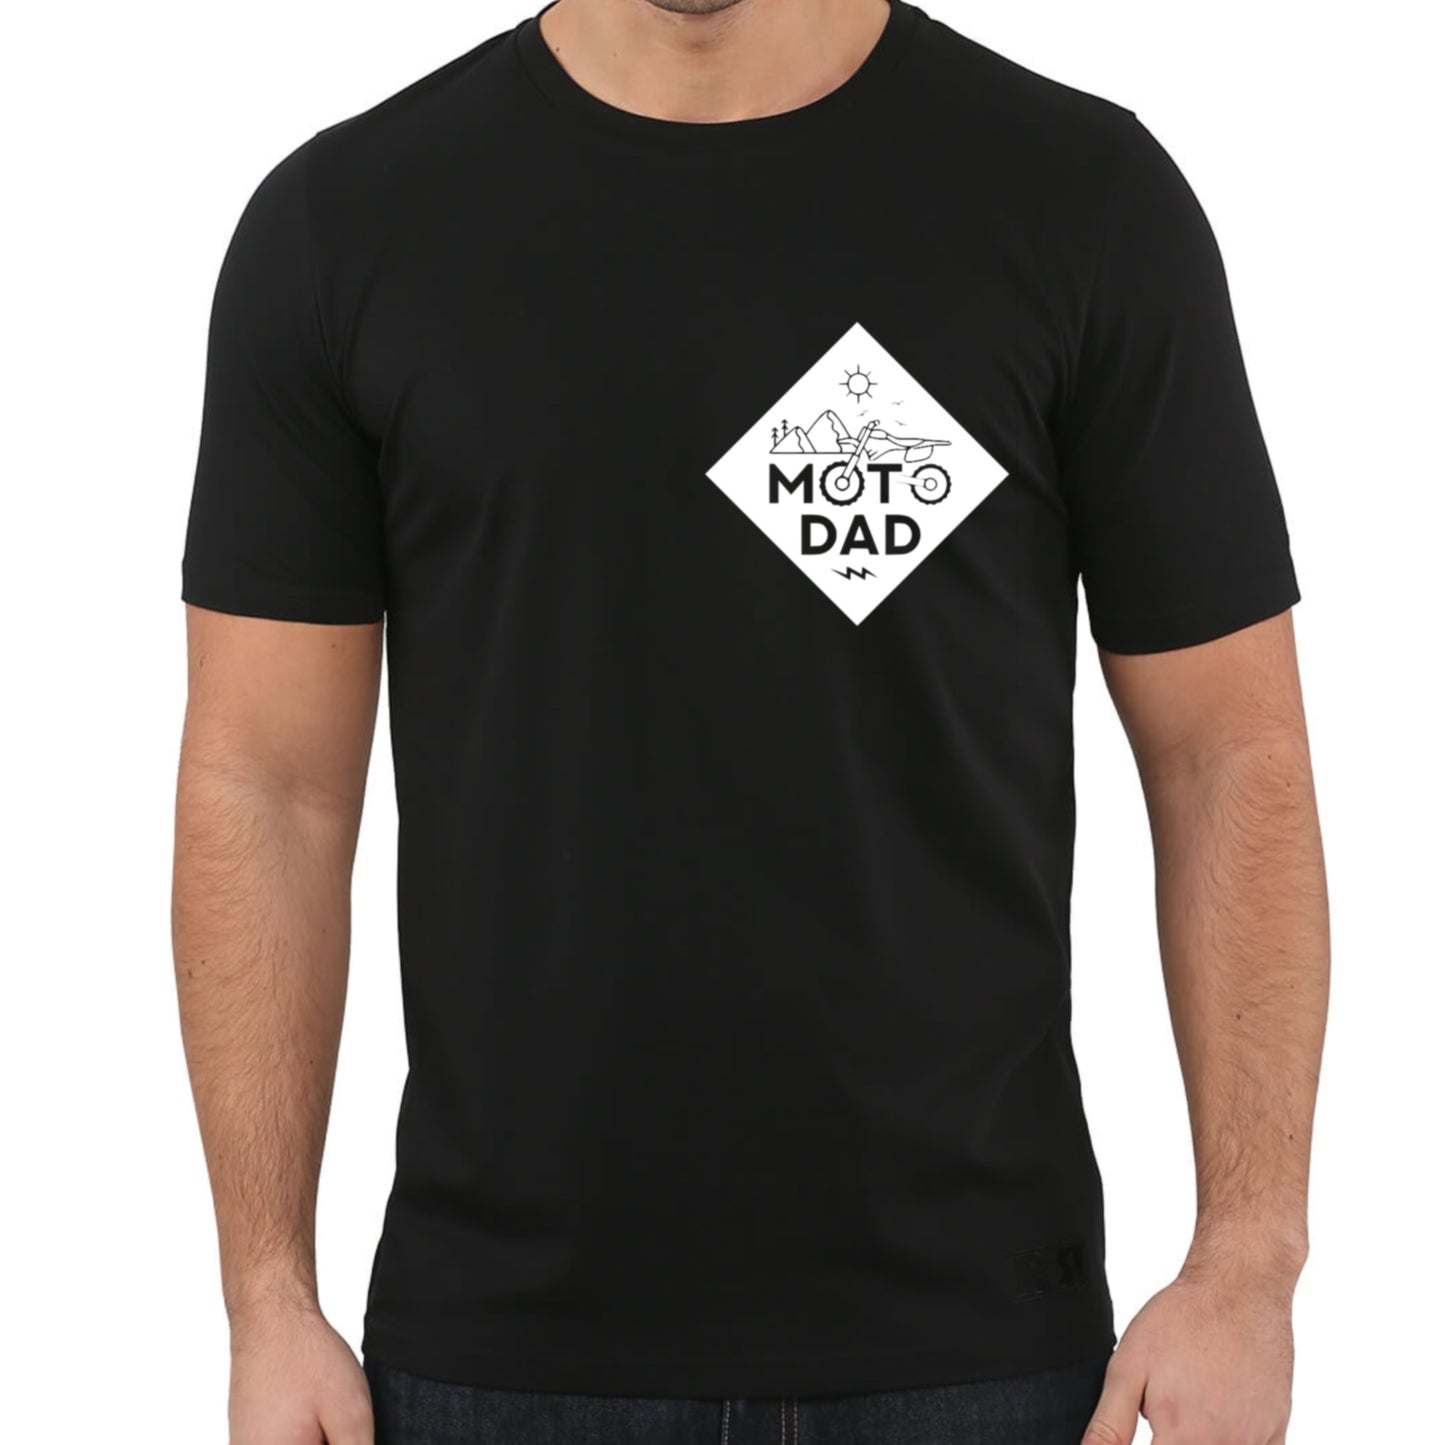 Moto dad T-shirt